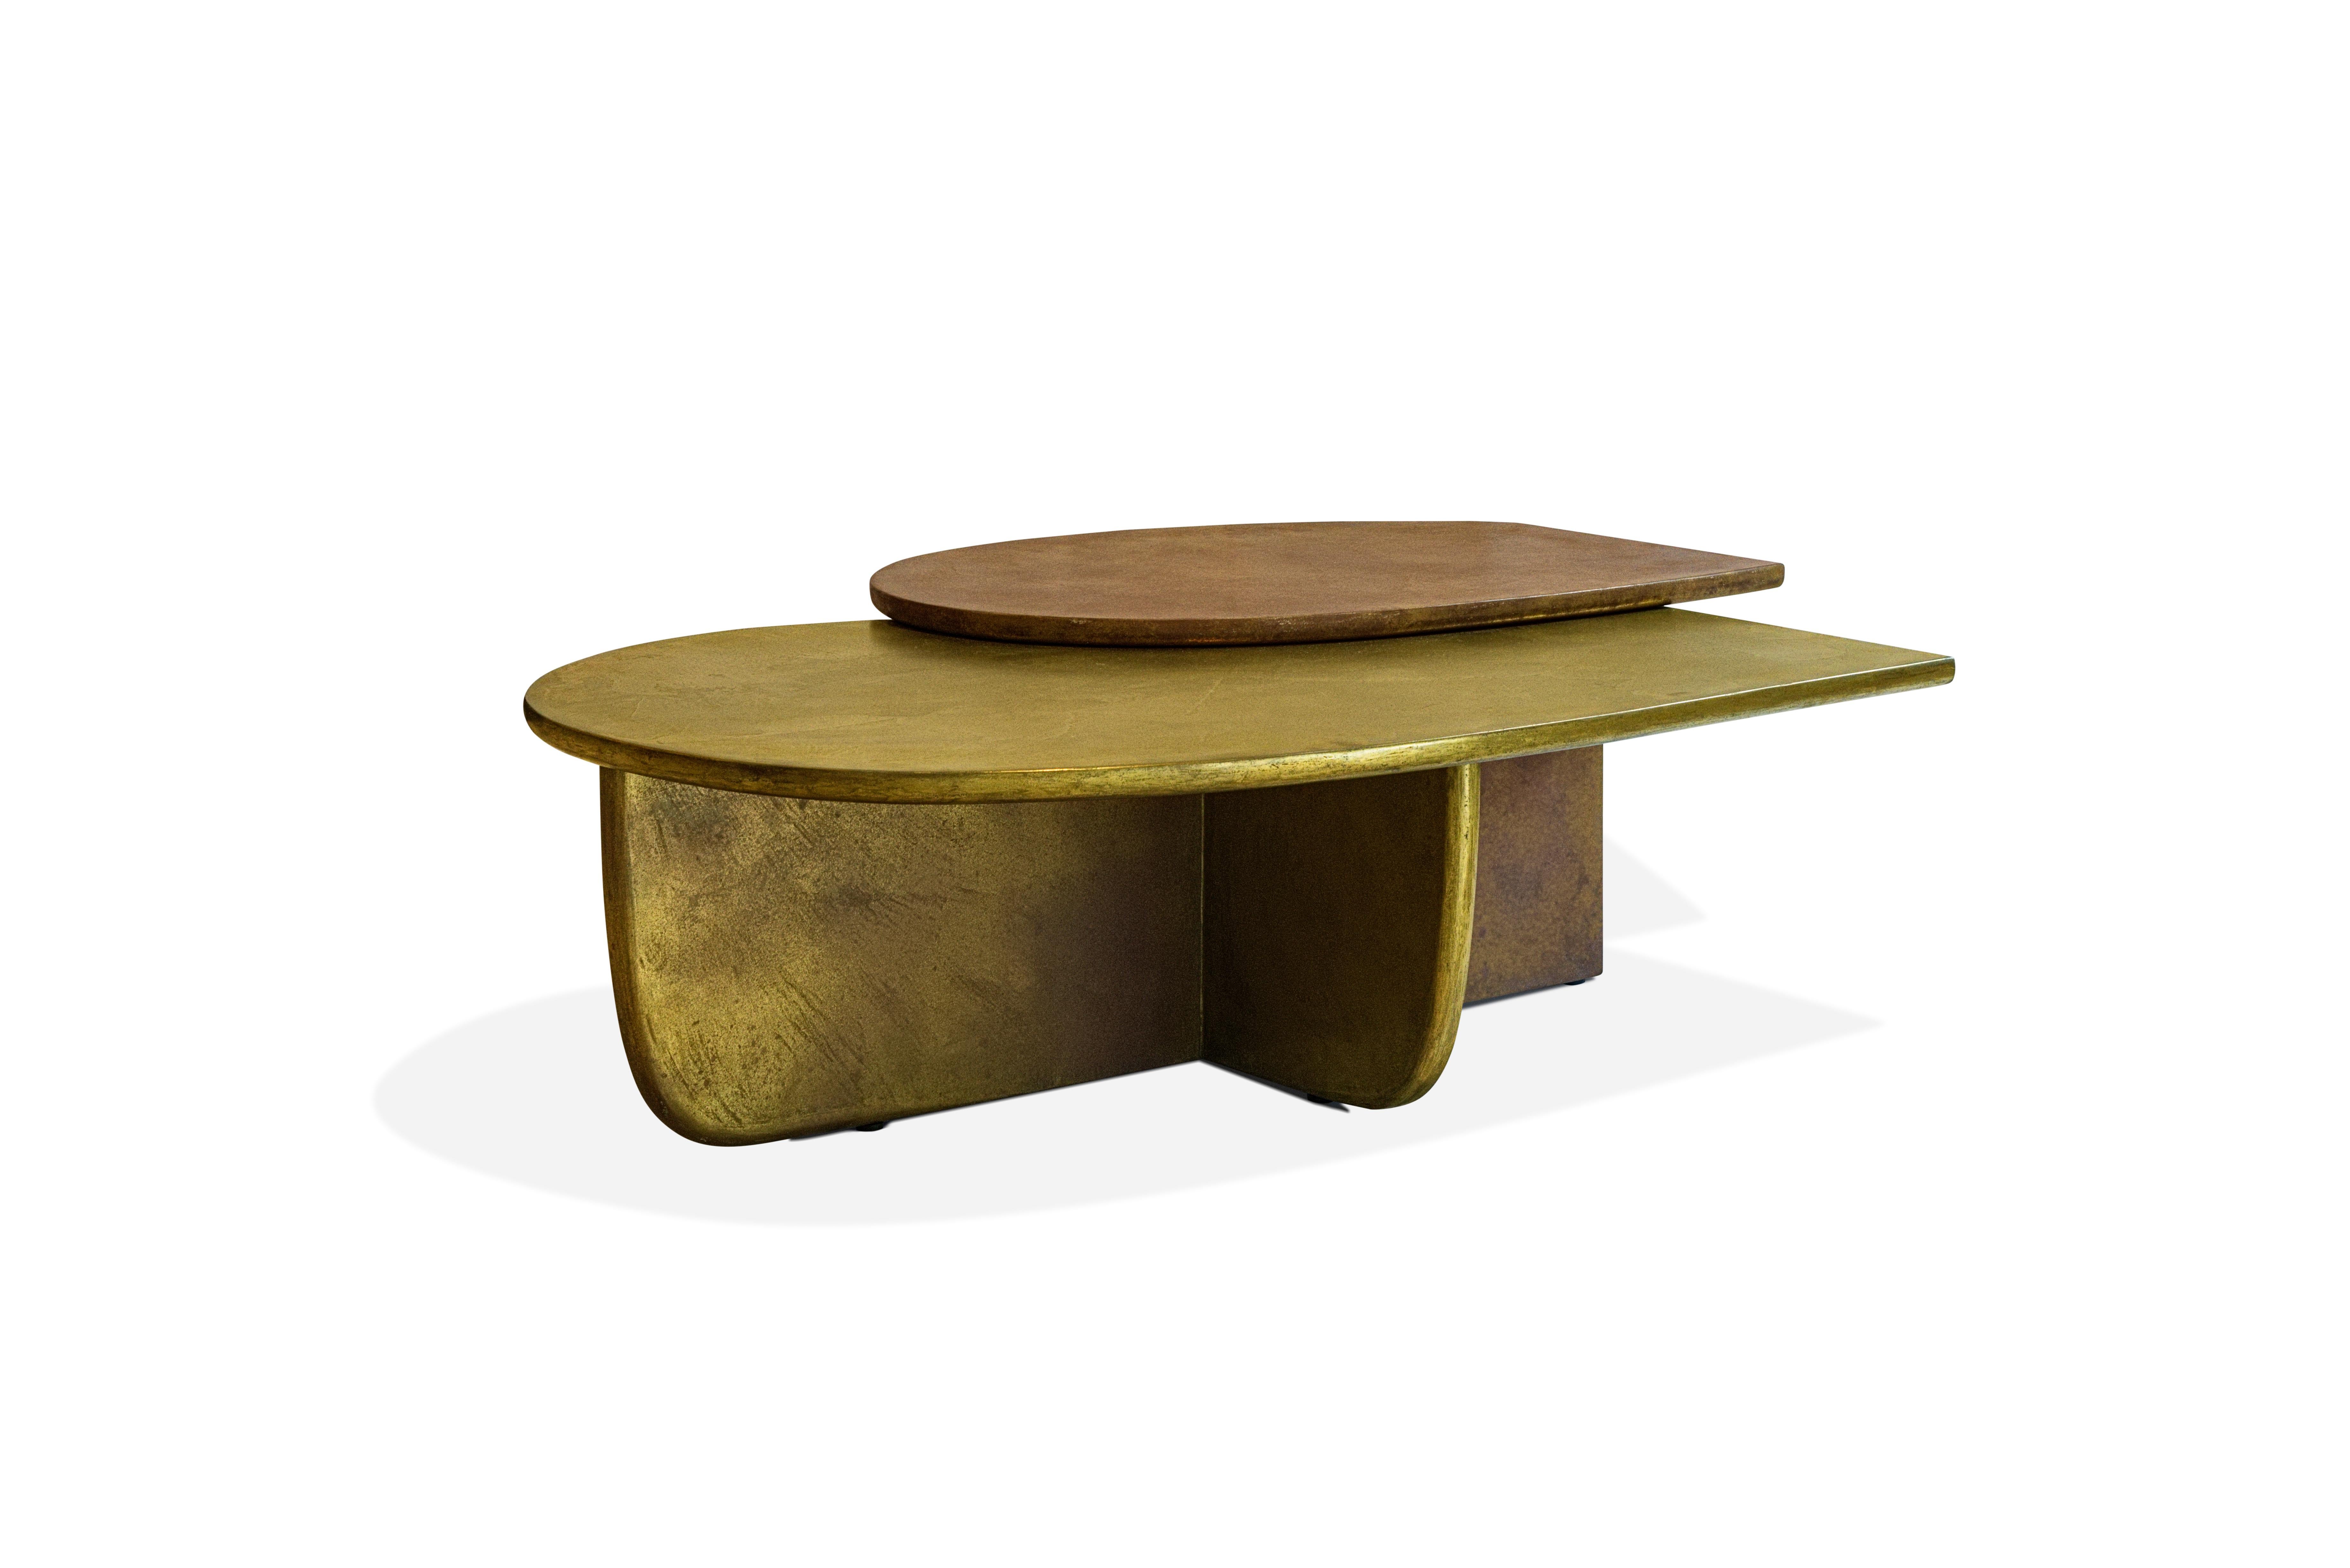 Le travail de Cibic se définit par son incroyable énergie qui transforme ses dessins en matériaux vibrants - comme la table basse Jupiter conçue pour Delvis Unlimited. La pièce se caractérise par une combinaison de formes carrées et de lignes